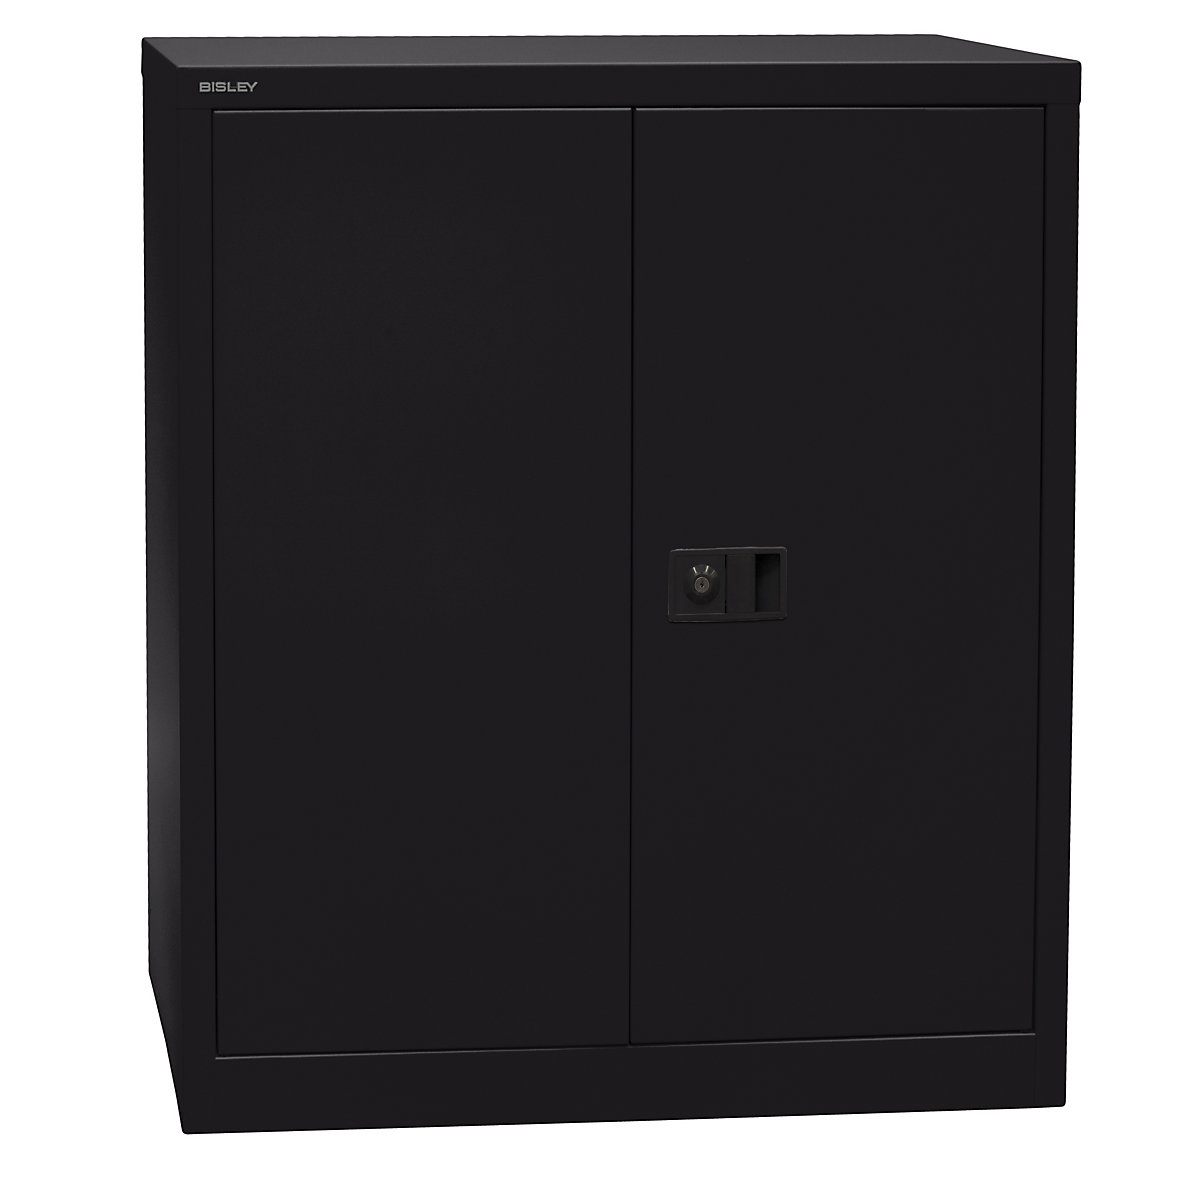 Skříň s otočnými dveřmi UNIVERSAL – BISLEY, v x š x h 1000 x 914 x 400 mm, 1 police, 2 výšky pořadačů, černá-4